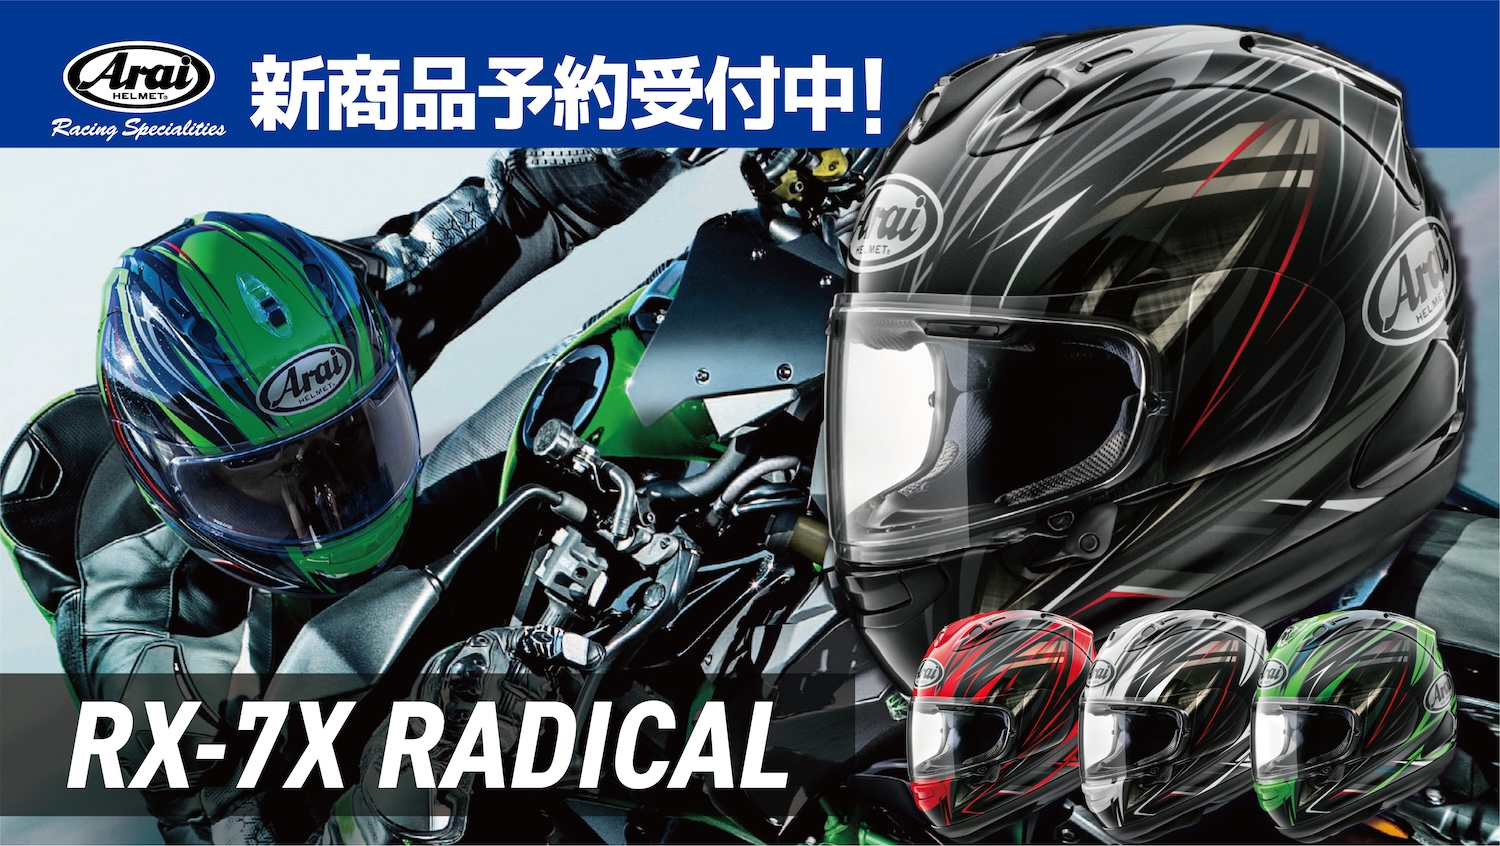 アライヘルメット RX-7X RADICAL RX-7X・ラジカル - セキュリティ ...